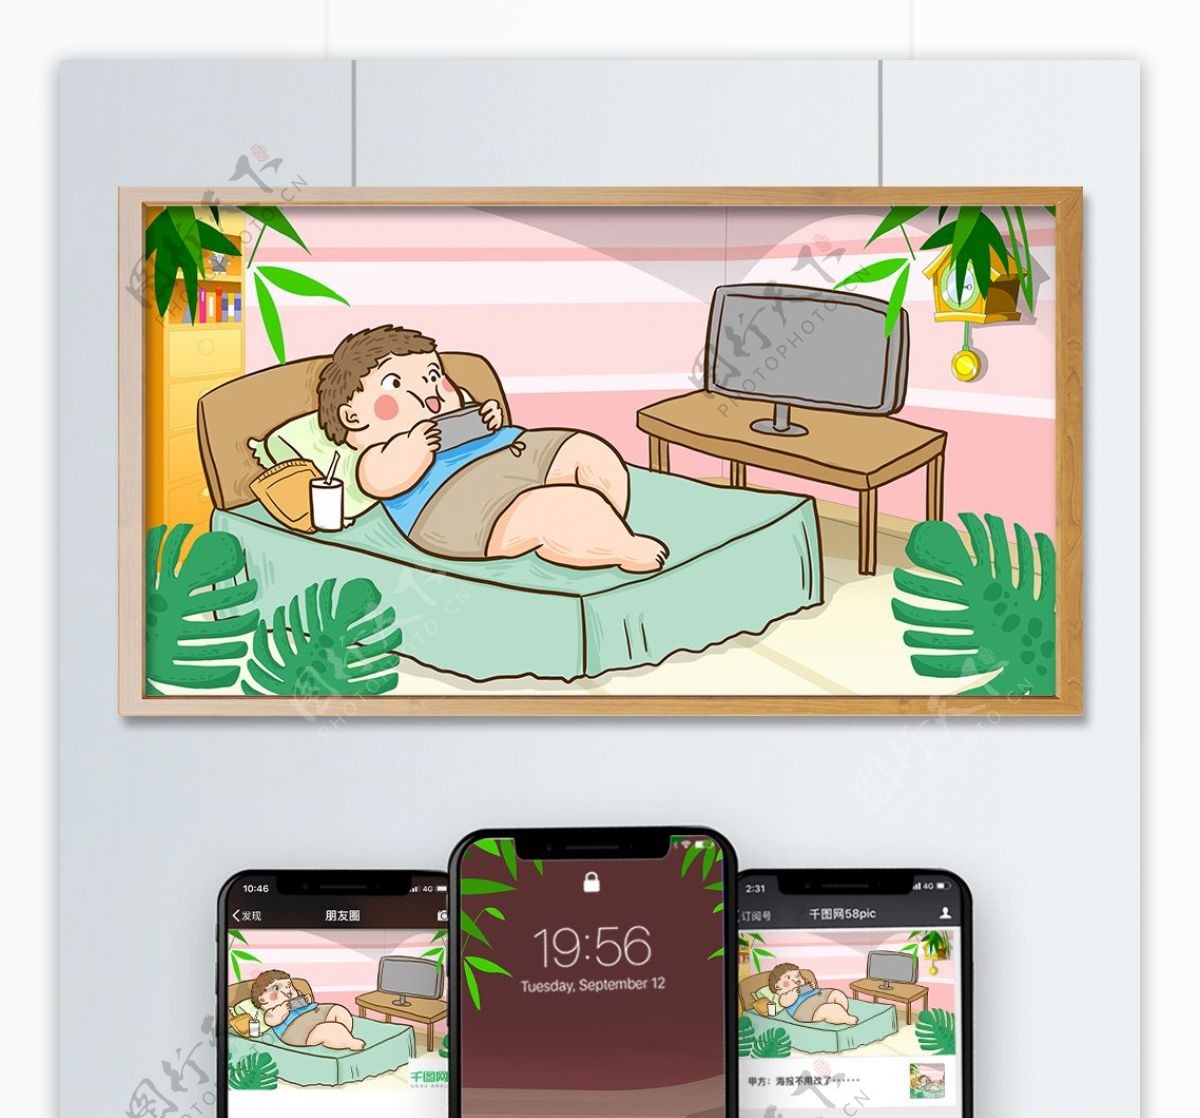 肥宅的快乐时光躺床看电影玩手机手绘插画